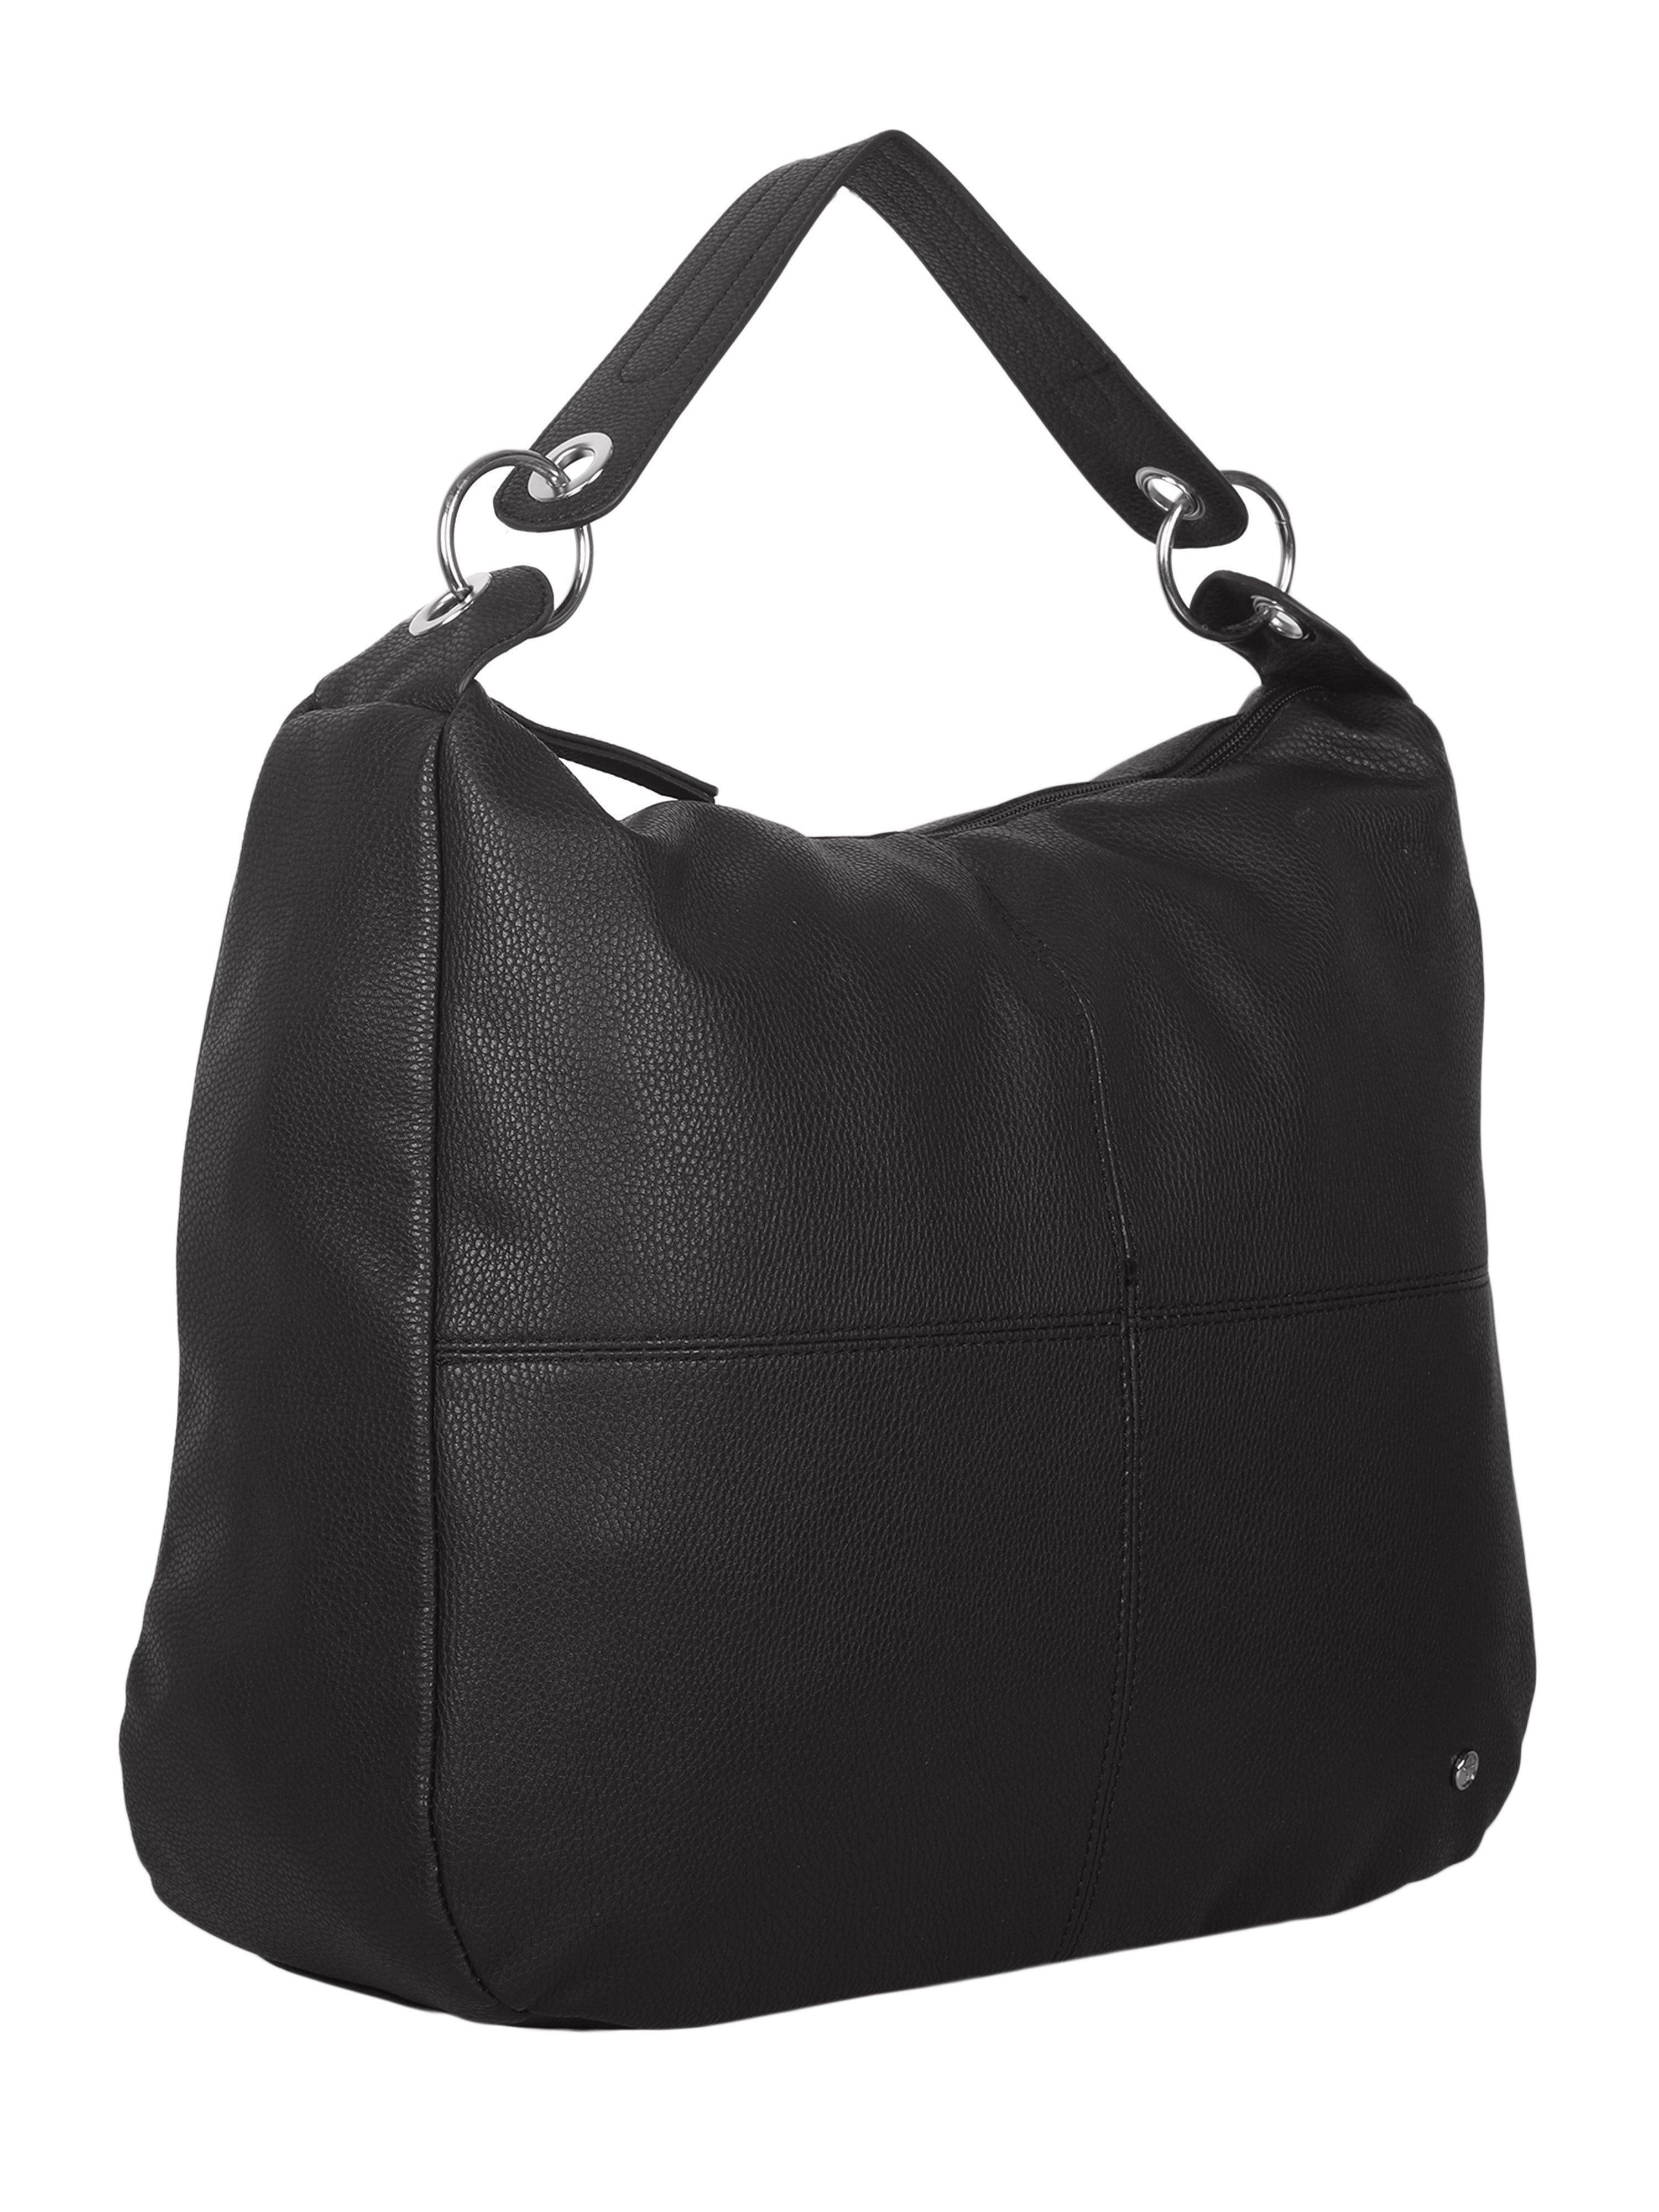 Bulchee Ladies Black Shoulder Bag